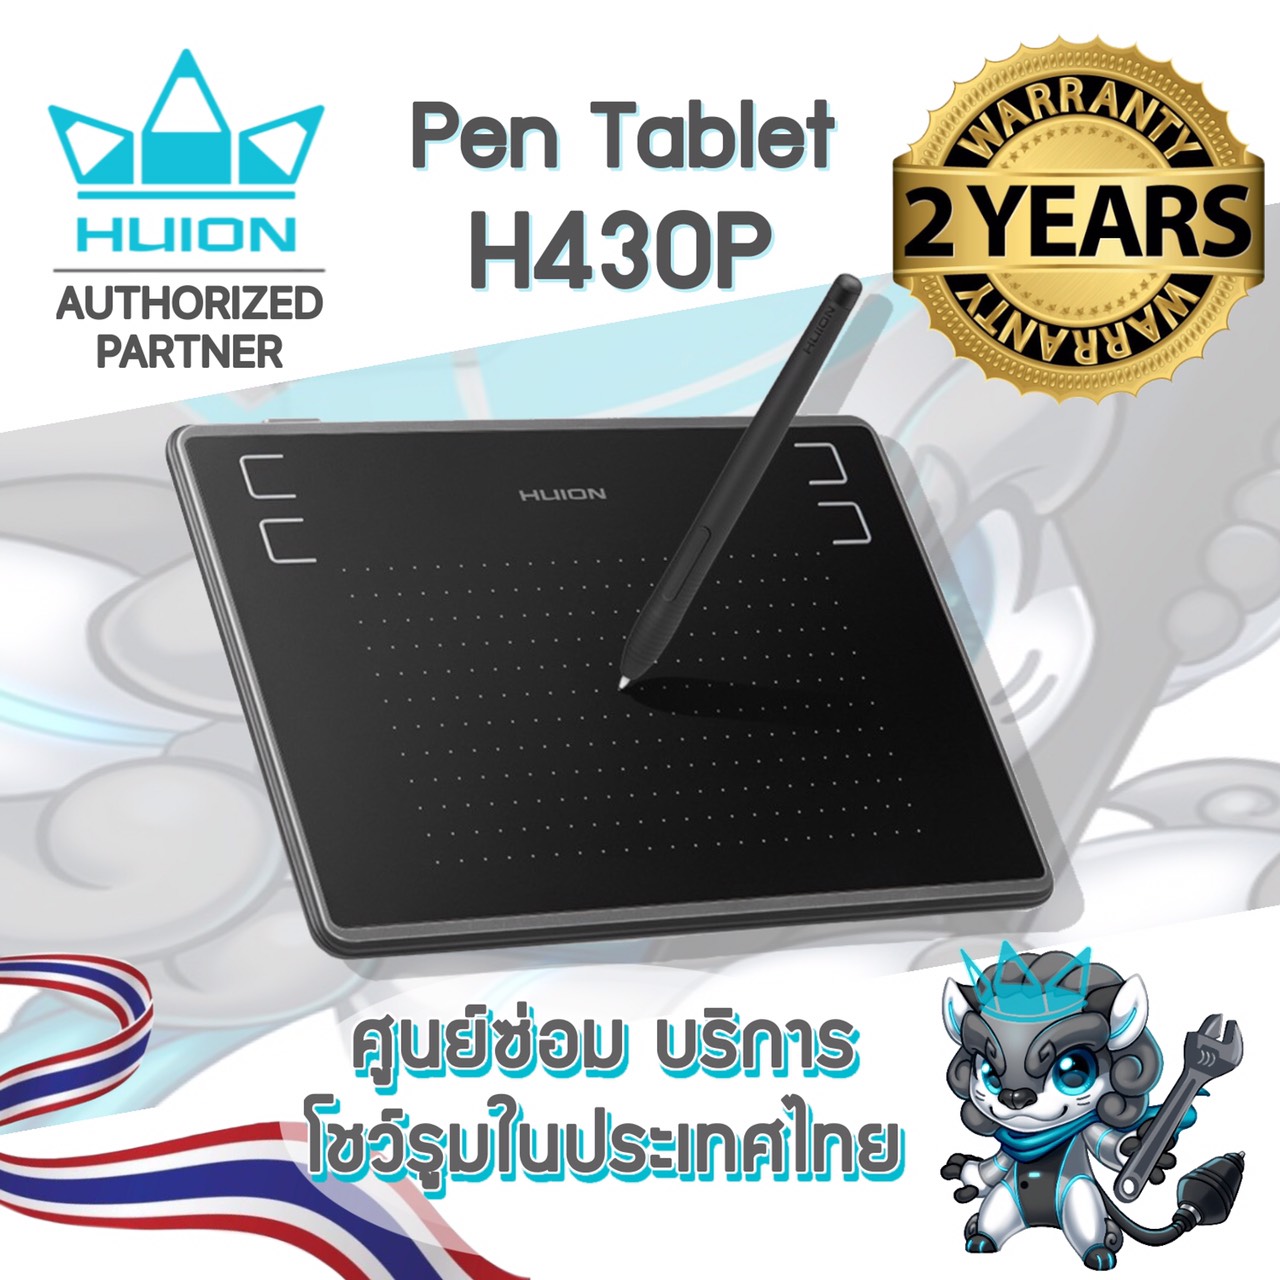 เมาส์ปาก Huion H430P  เมาส์ปากกาคอม เม้าส์ปากกา สำหรับวาดภาพกราฟฟิก  (รุ่นใหม่ รับประกัน 2 ปี มีศูนย์ไทย)